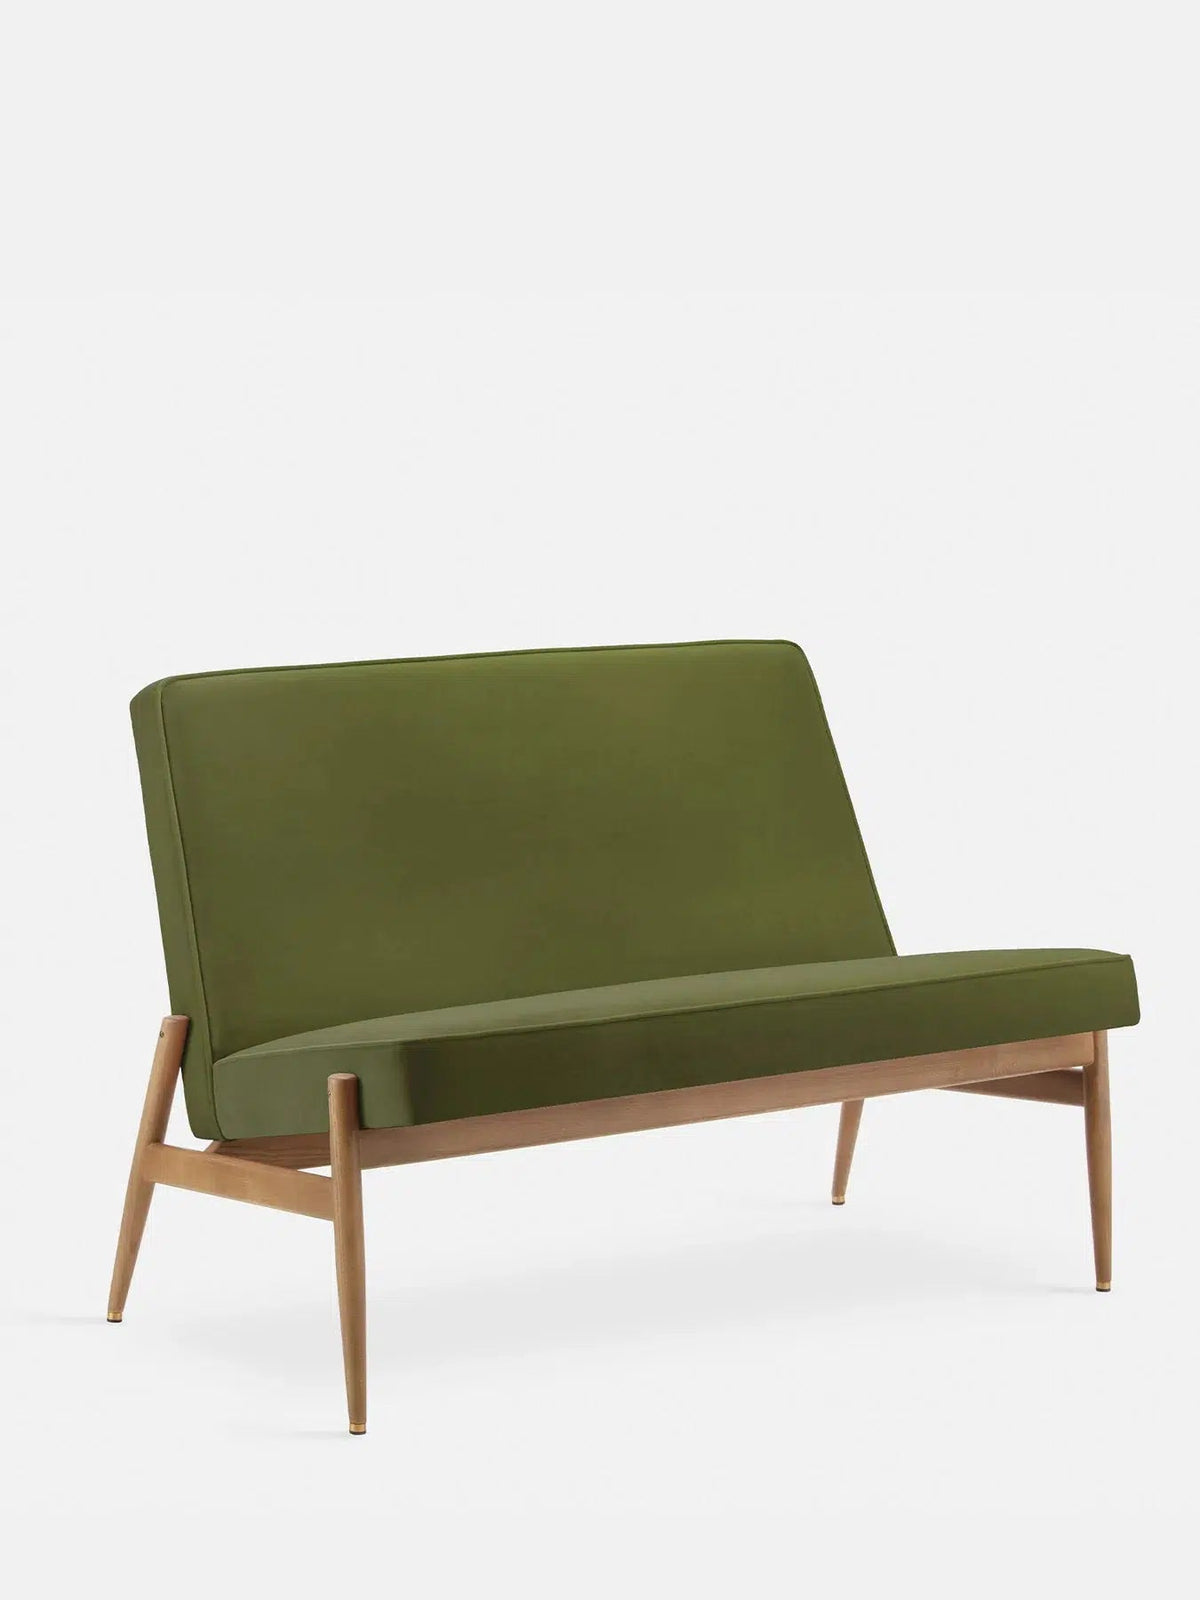 Fox Club Sofa-366 Concept-Contract Furniture Store